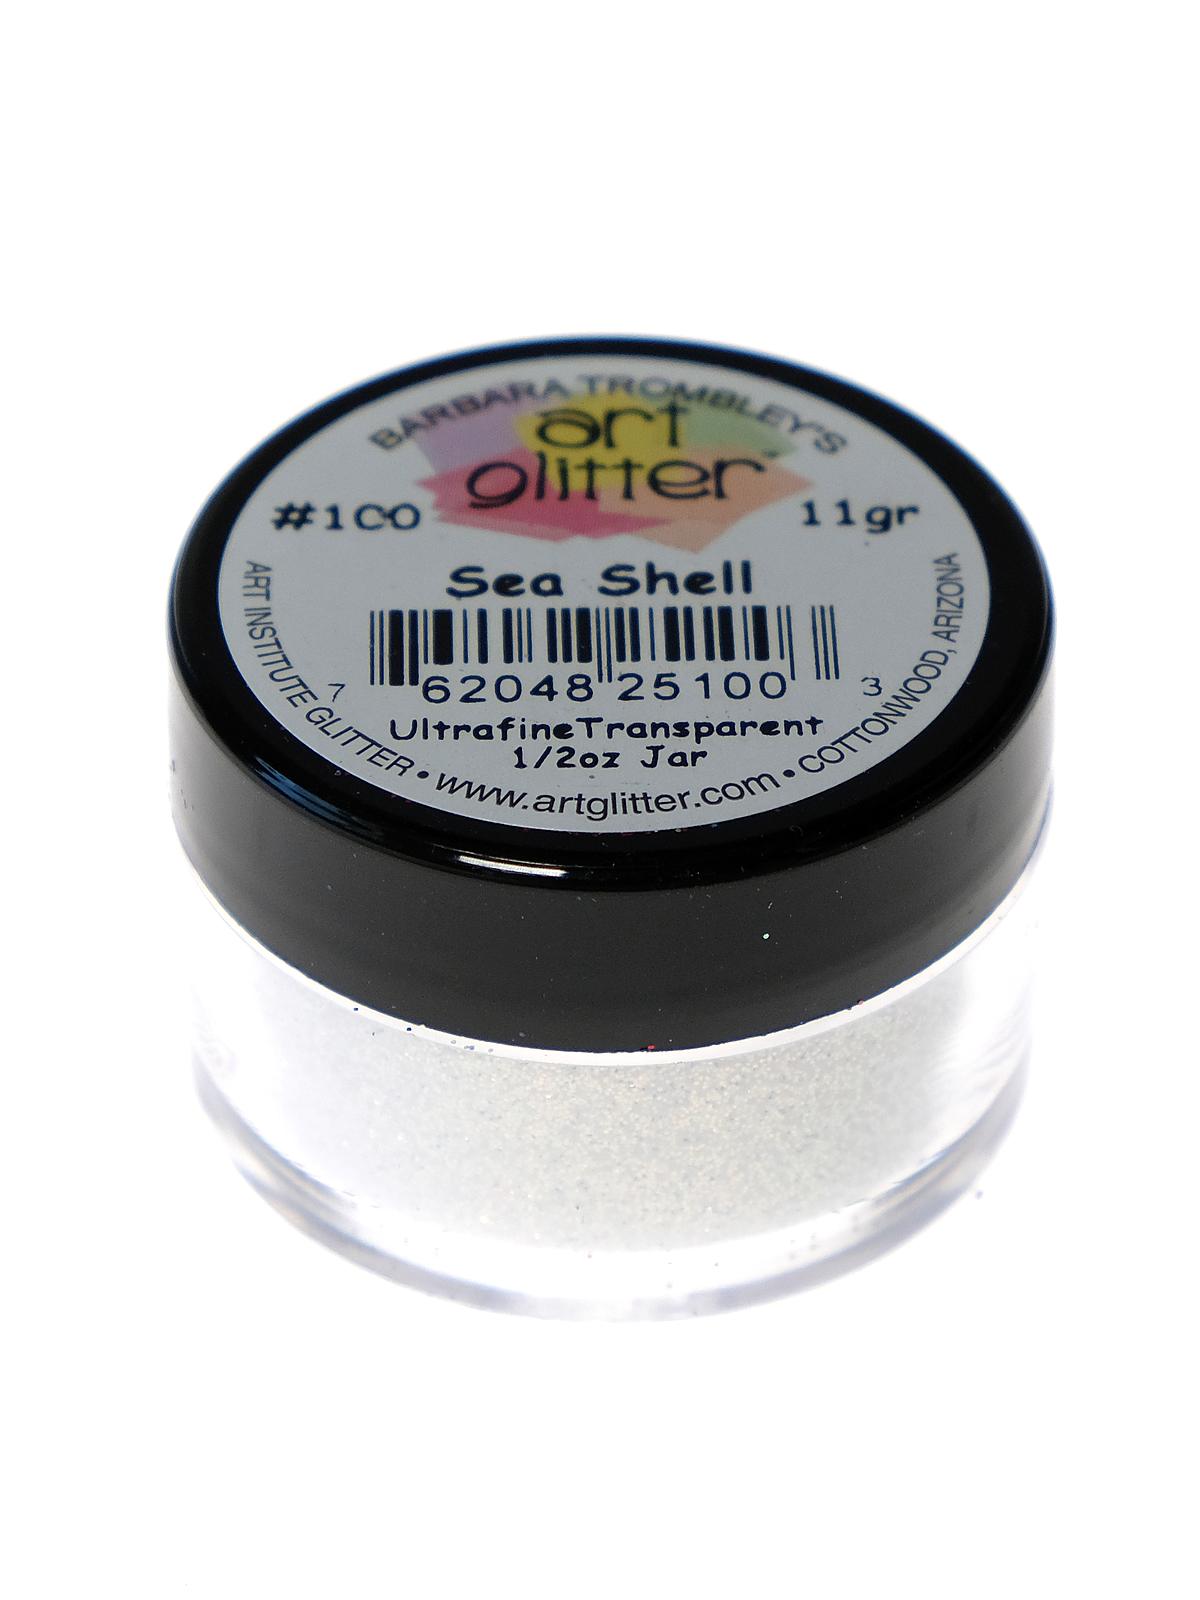 Ultrafine Transparent Glitter Sea Shell 1 2 Oz. Jar